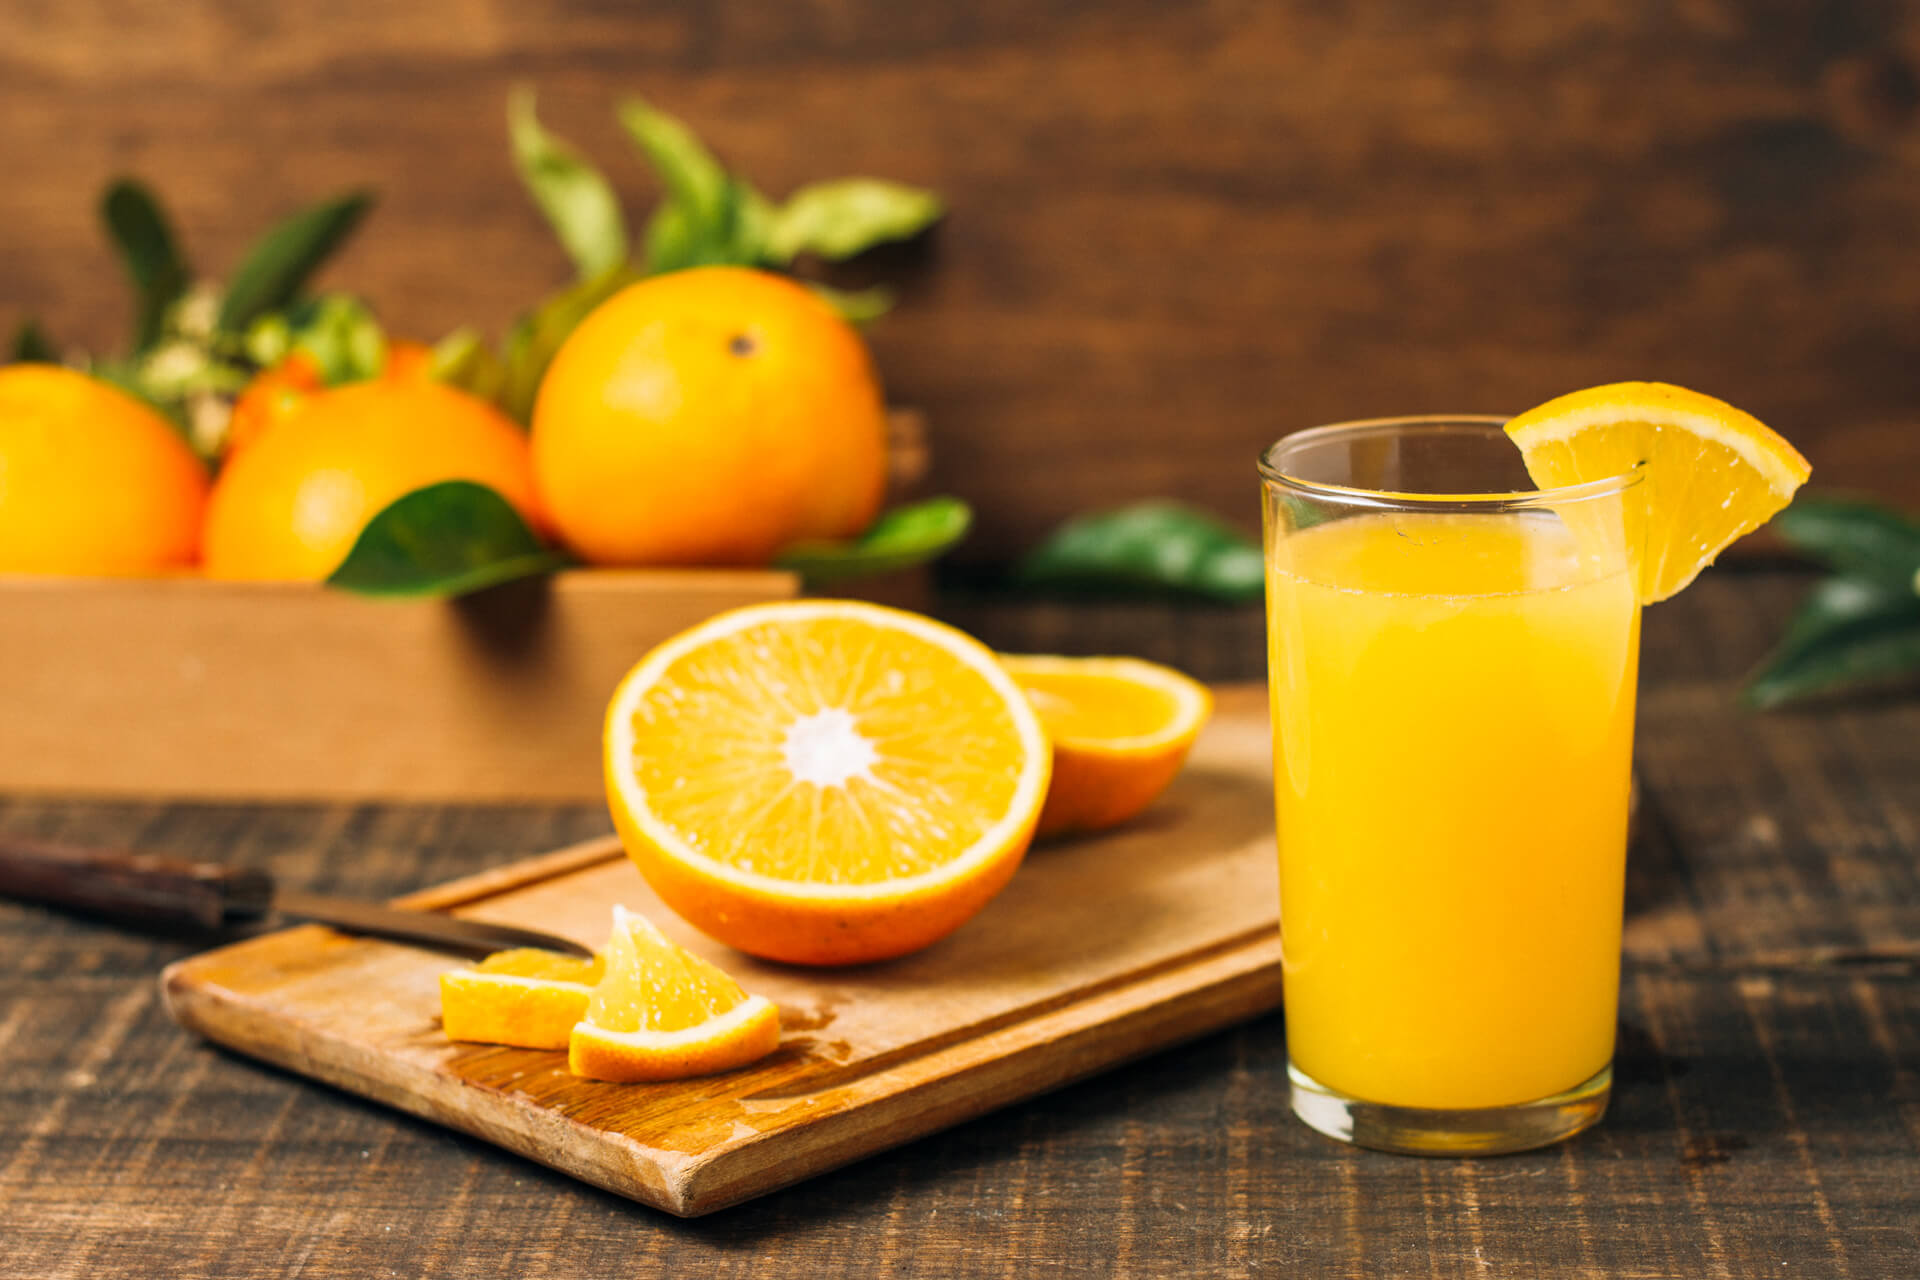 zumo de naranja natural sabroso y beneficioso